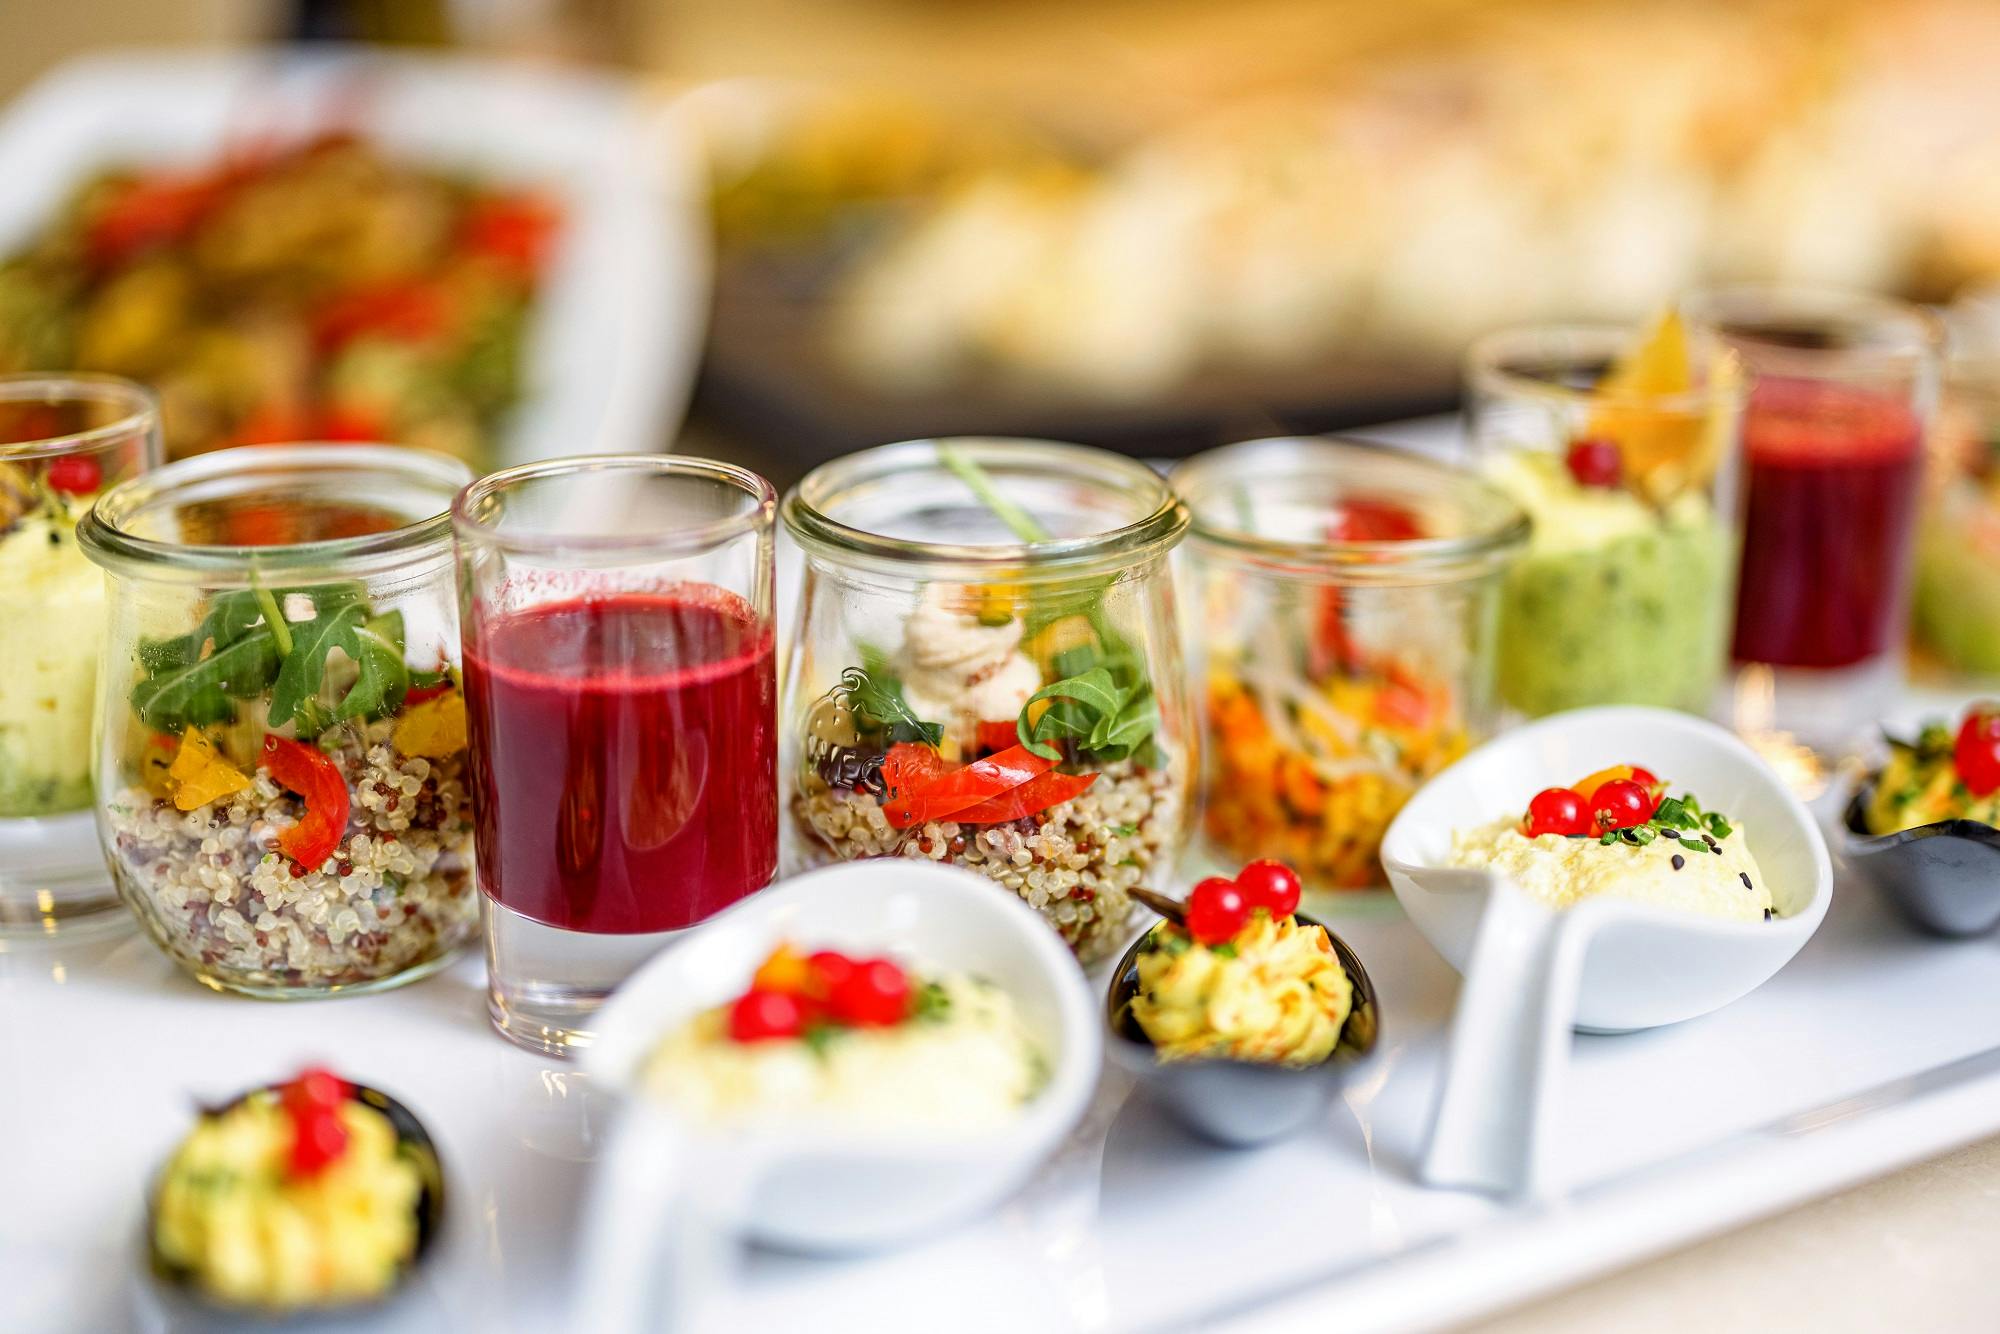 Vielfältige Auswahl an gesunden Vorspeisen in kleinen Gläsern und Schüsseln für Catering oder Eventbuffet.